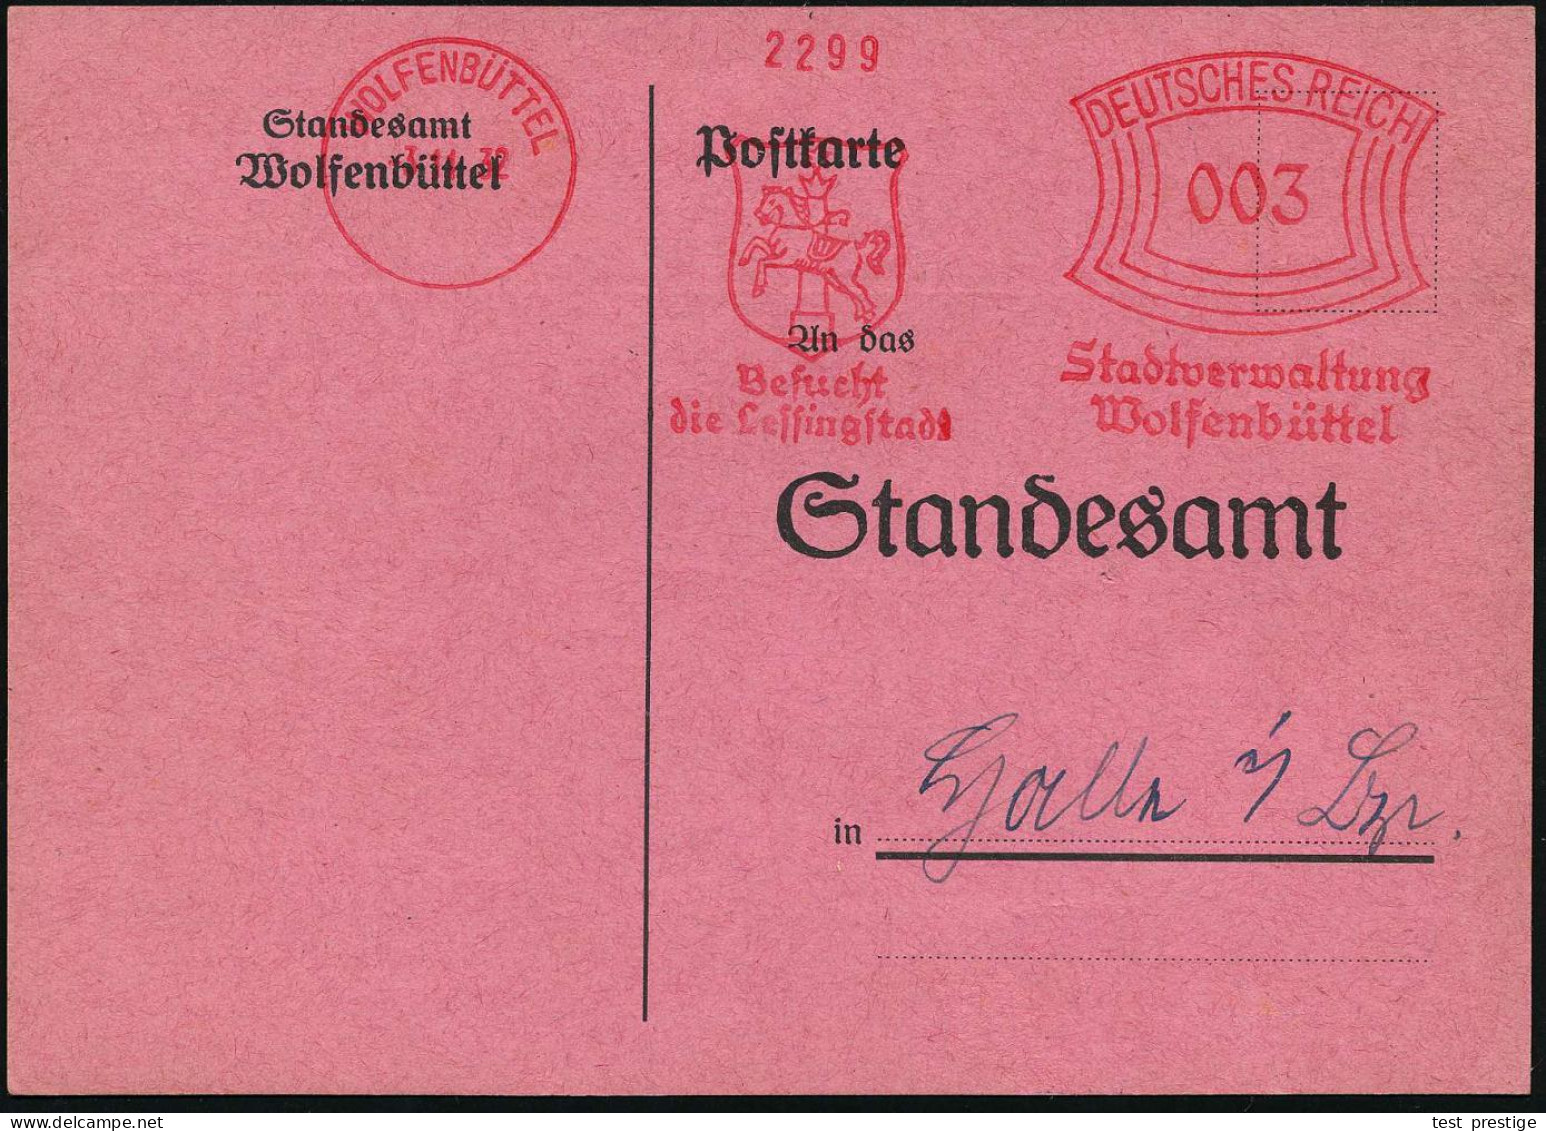 WOLFENBÜTTEL/ Besucht/ Die Lessingstadt/ Stadtverwaltung.. 1932 (3.11.) Seltener AFS Francotyp (Stadtwappen Mit Pferd) K - Theater